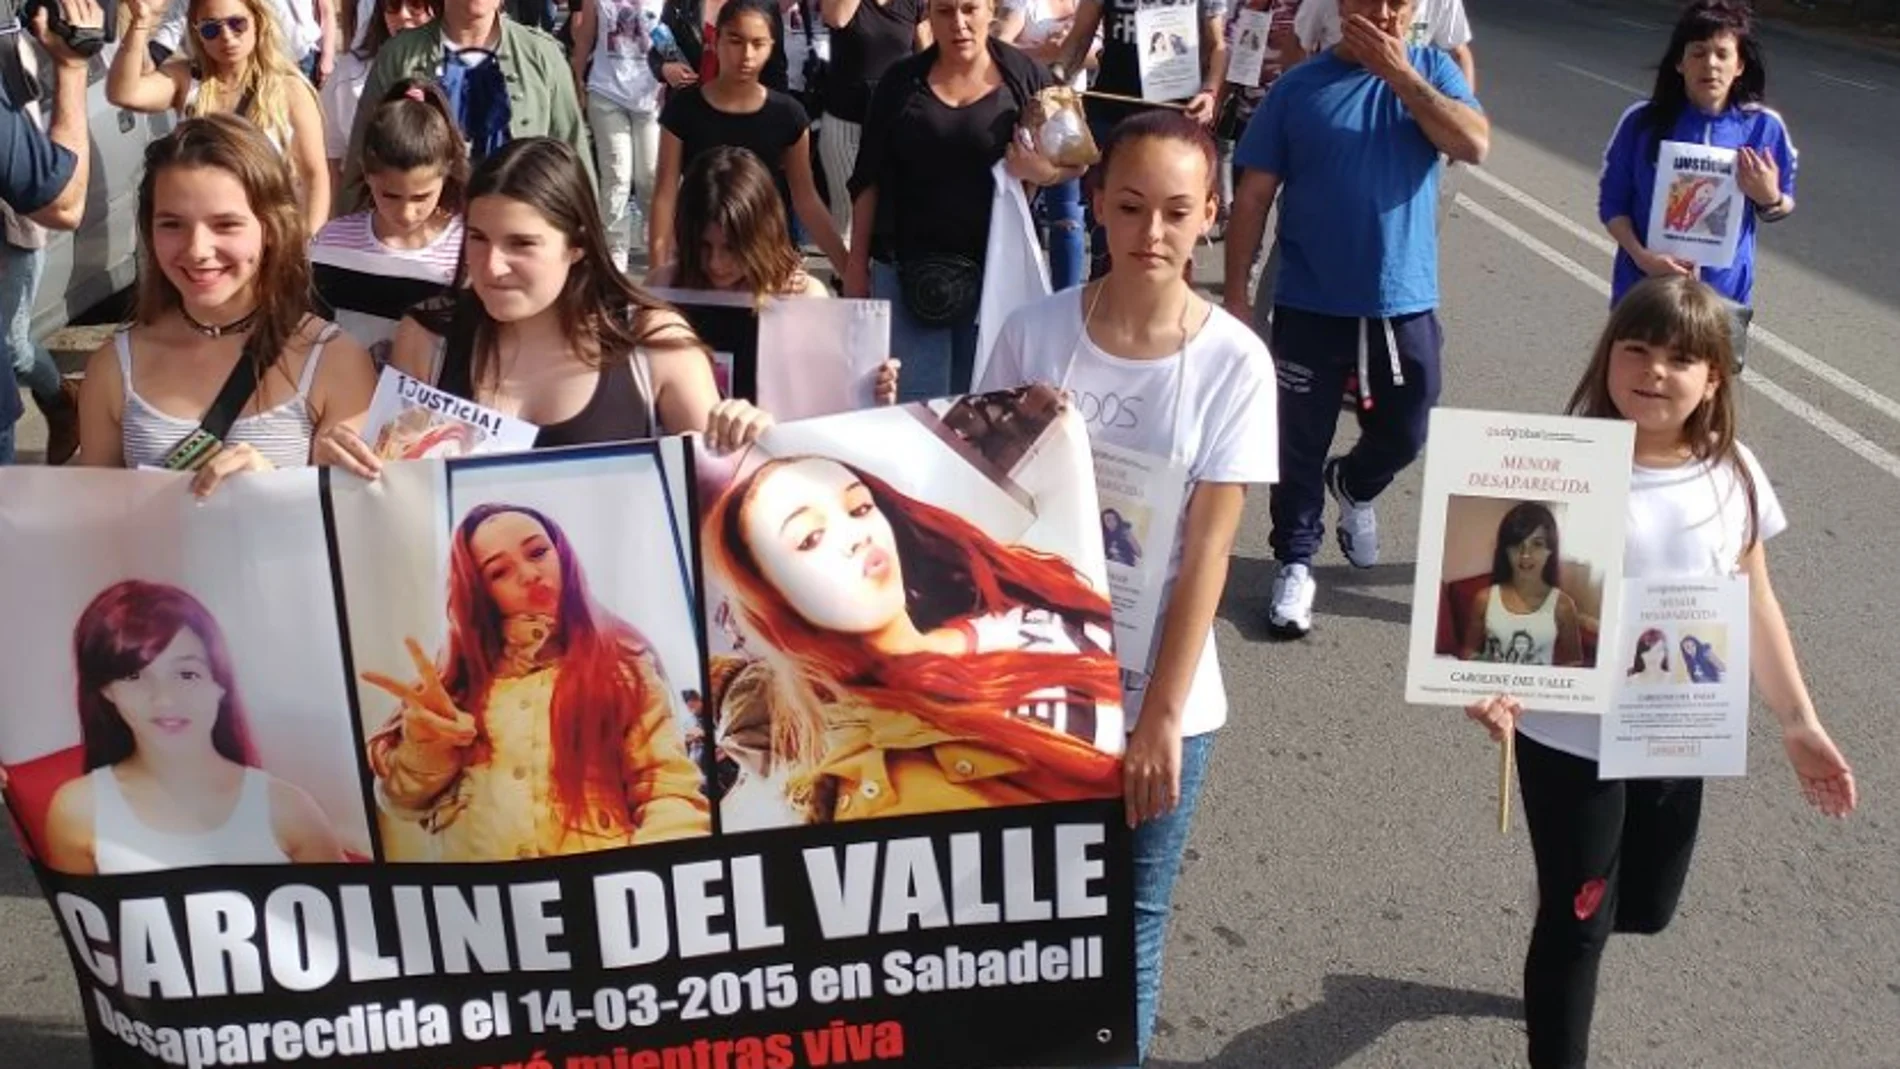 Manifestación en Sabadell por Caroline del Valle